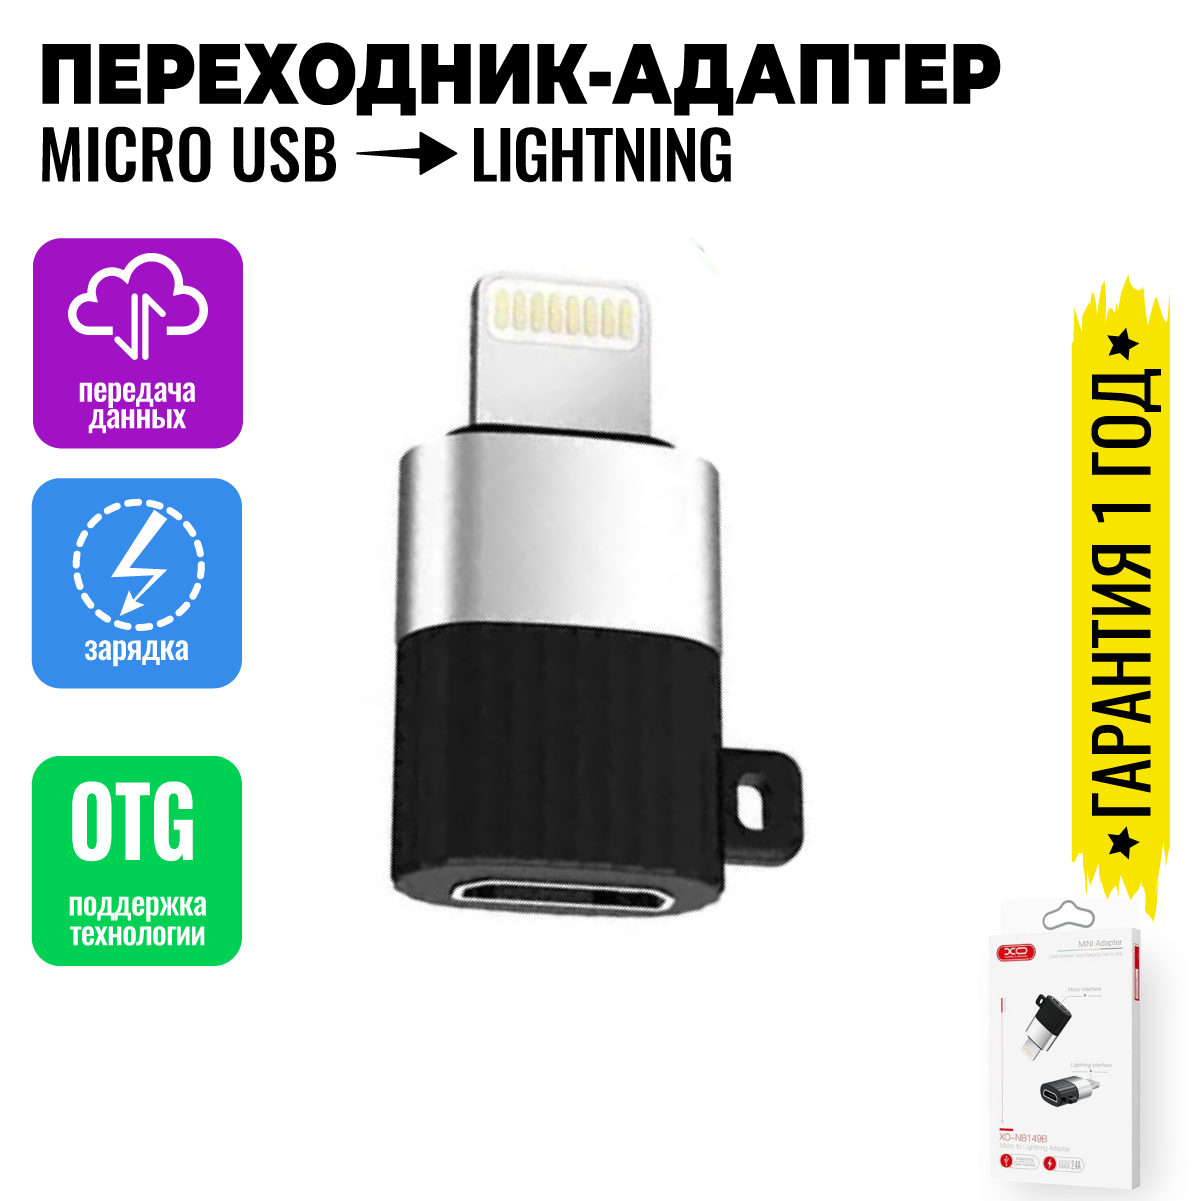 Адаптер переходник с Lightning на Micro USB OTG для телефонов, планшетов, смартфонов и компьютеров / XO NB149